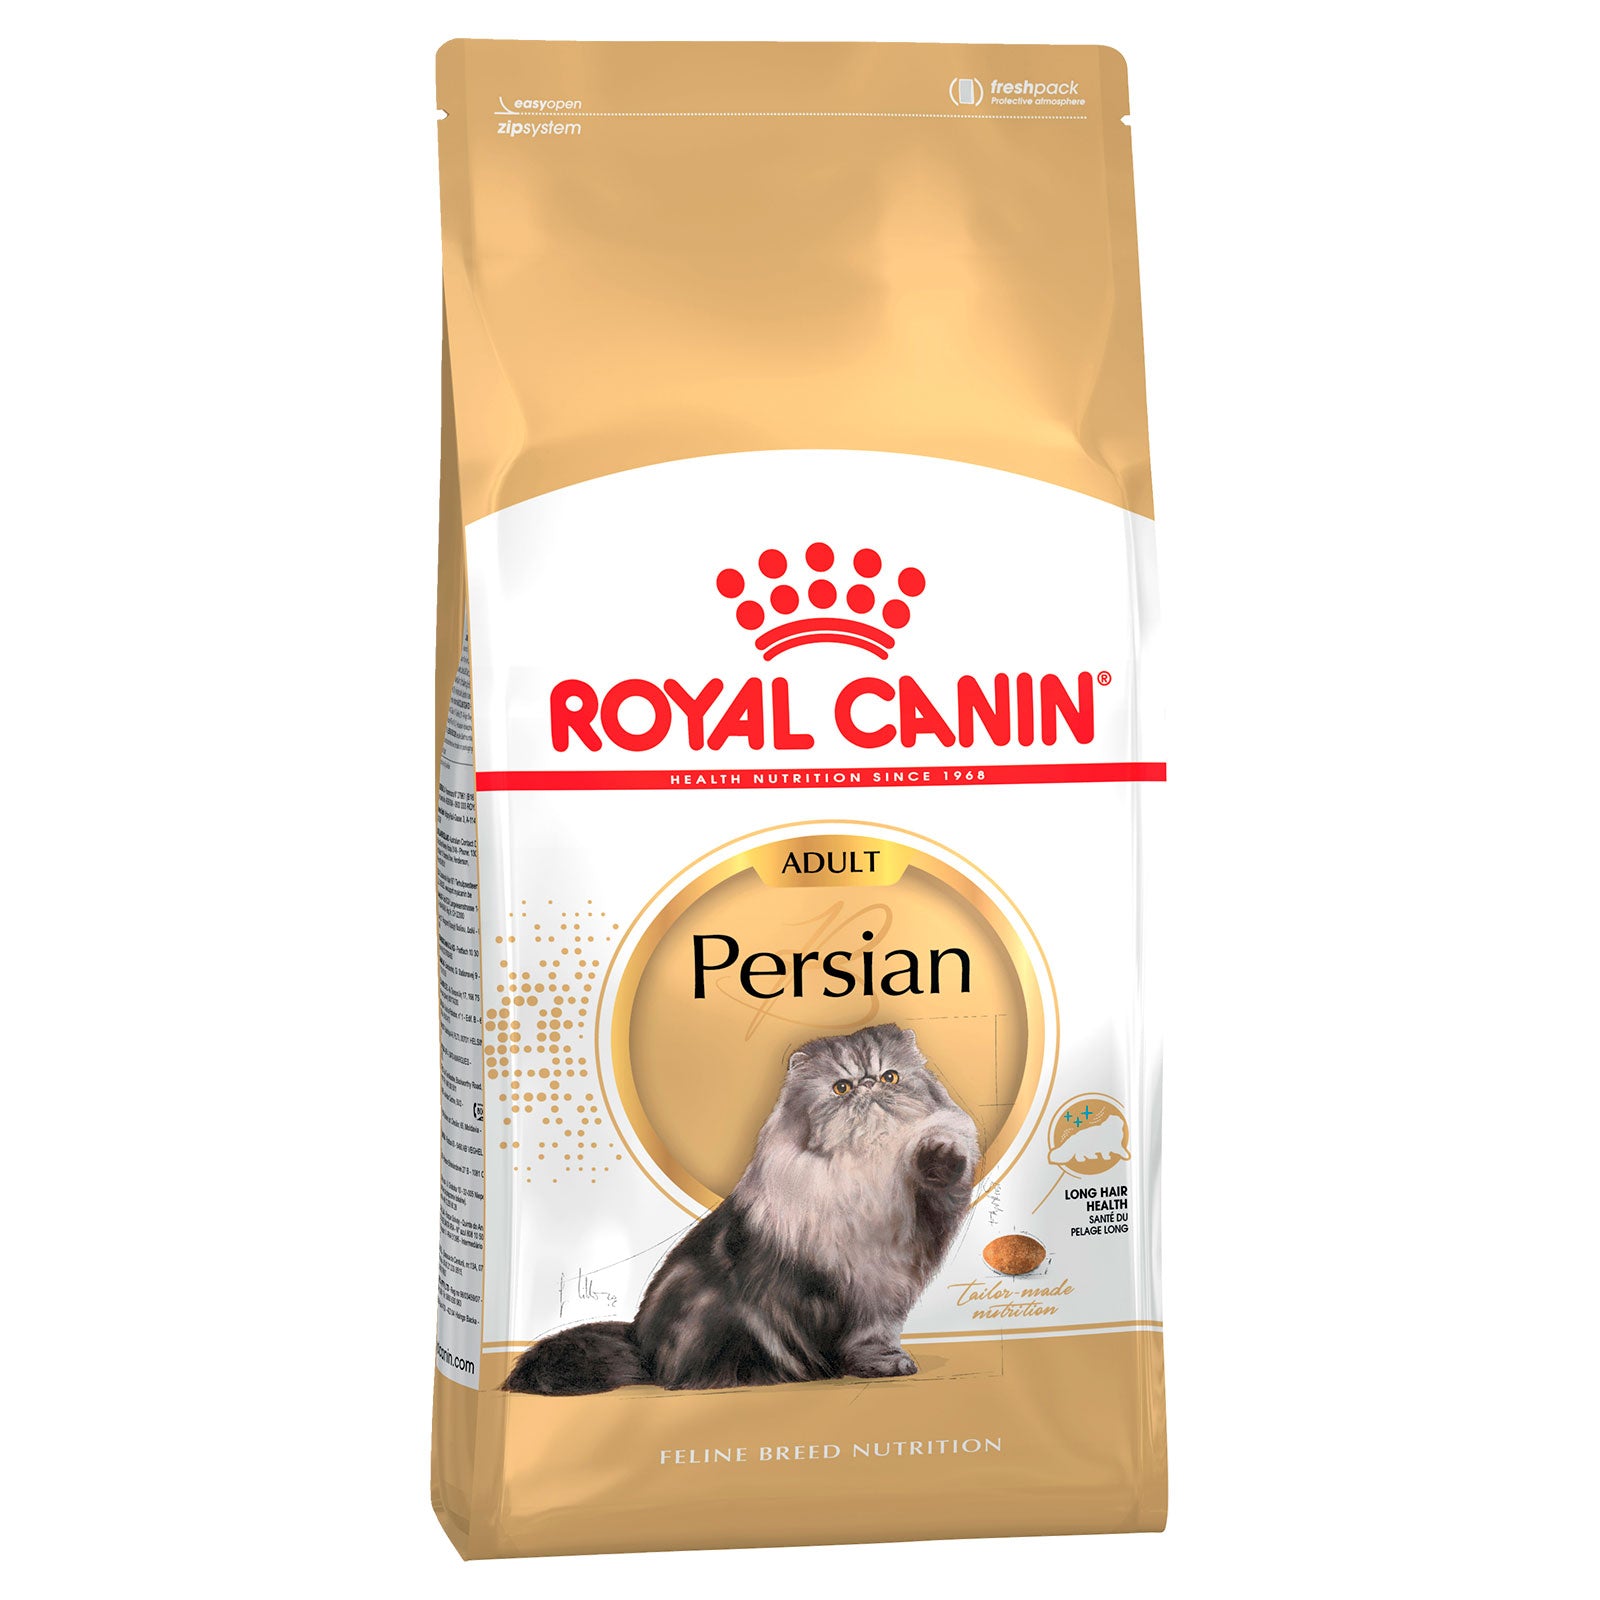 Royal Canin Cat Food Adult Persian